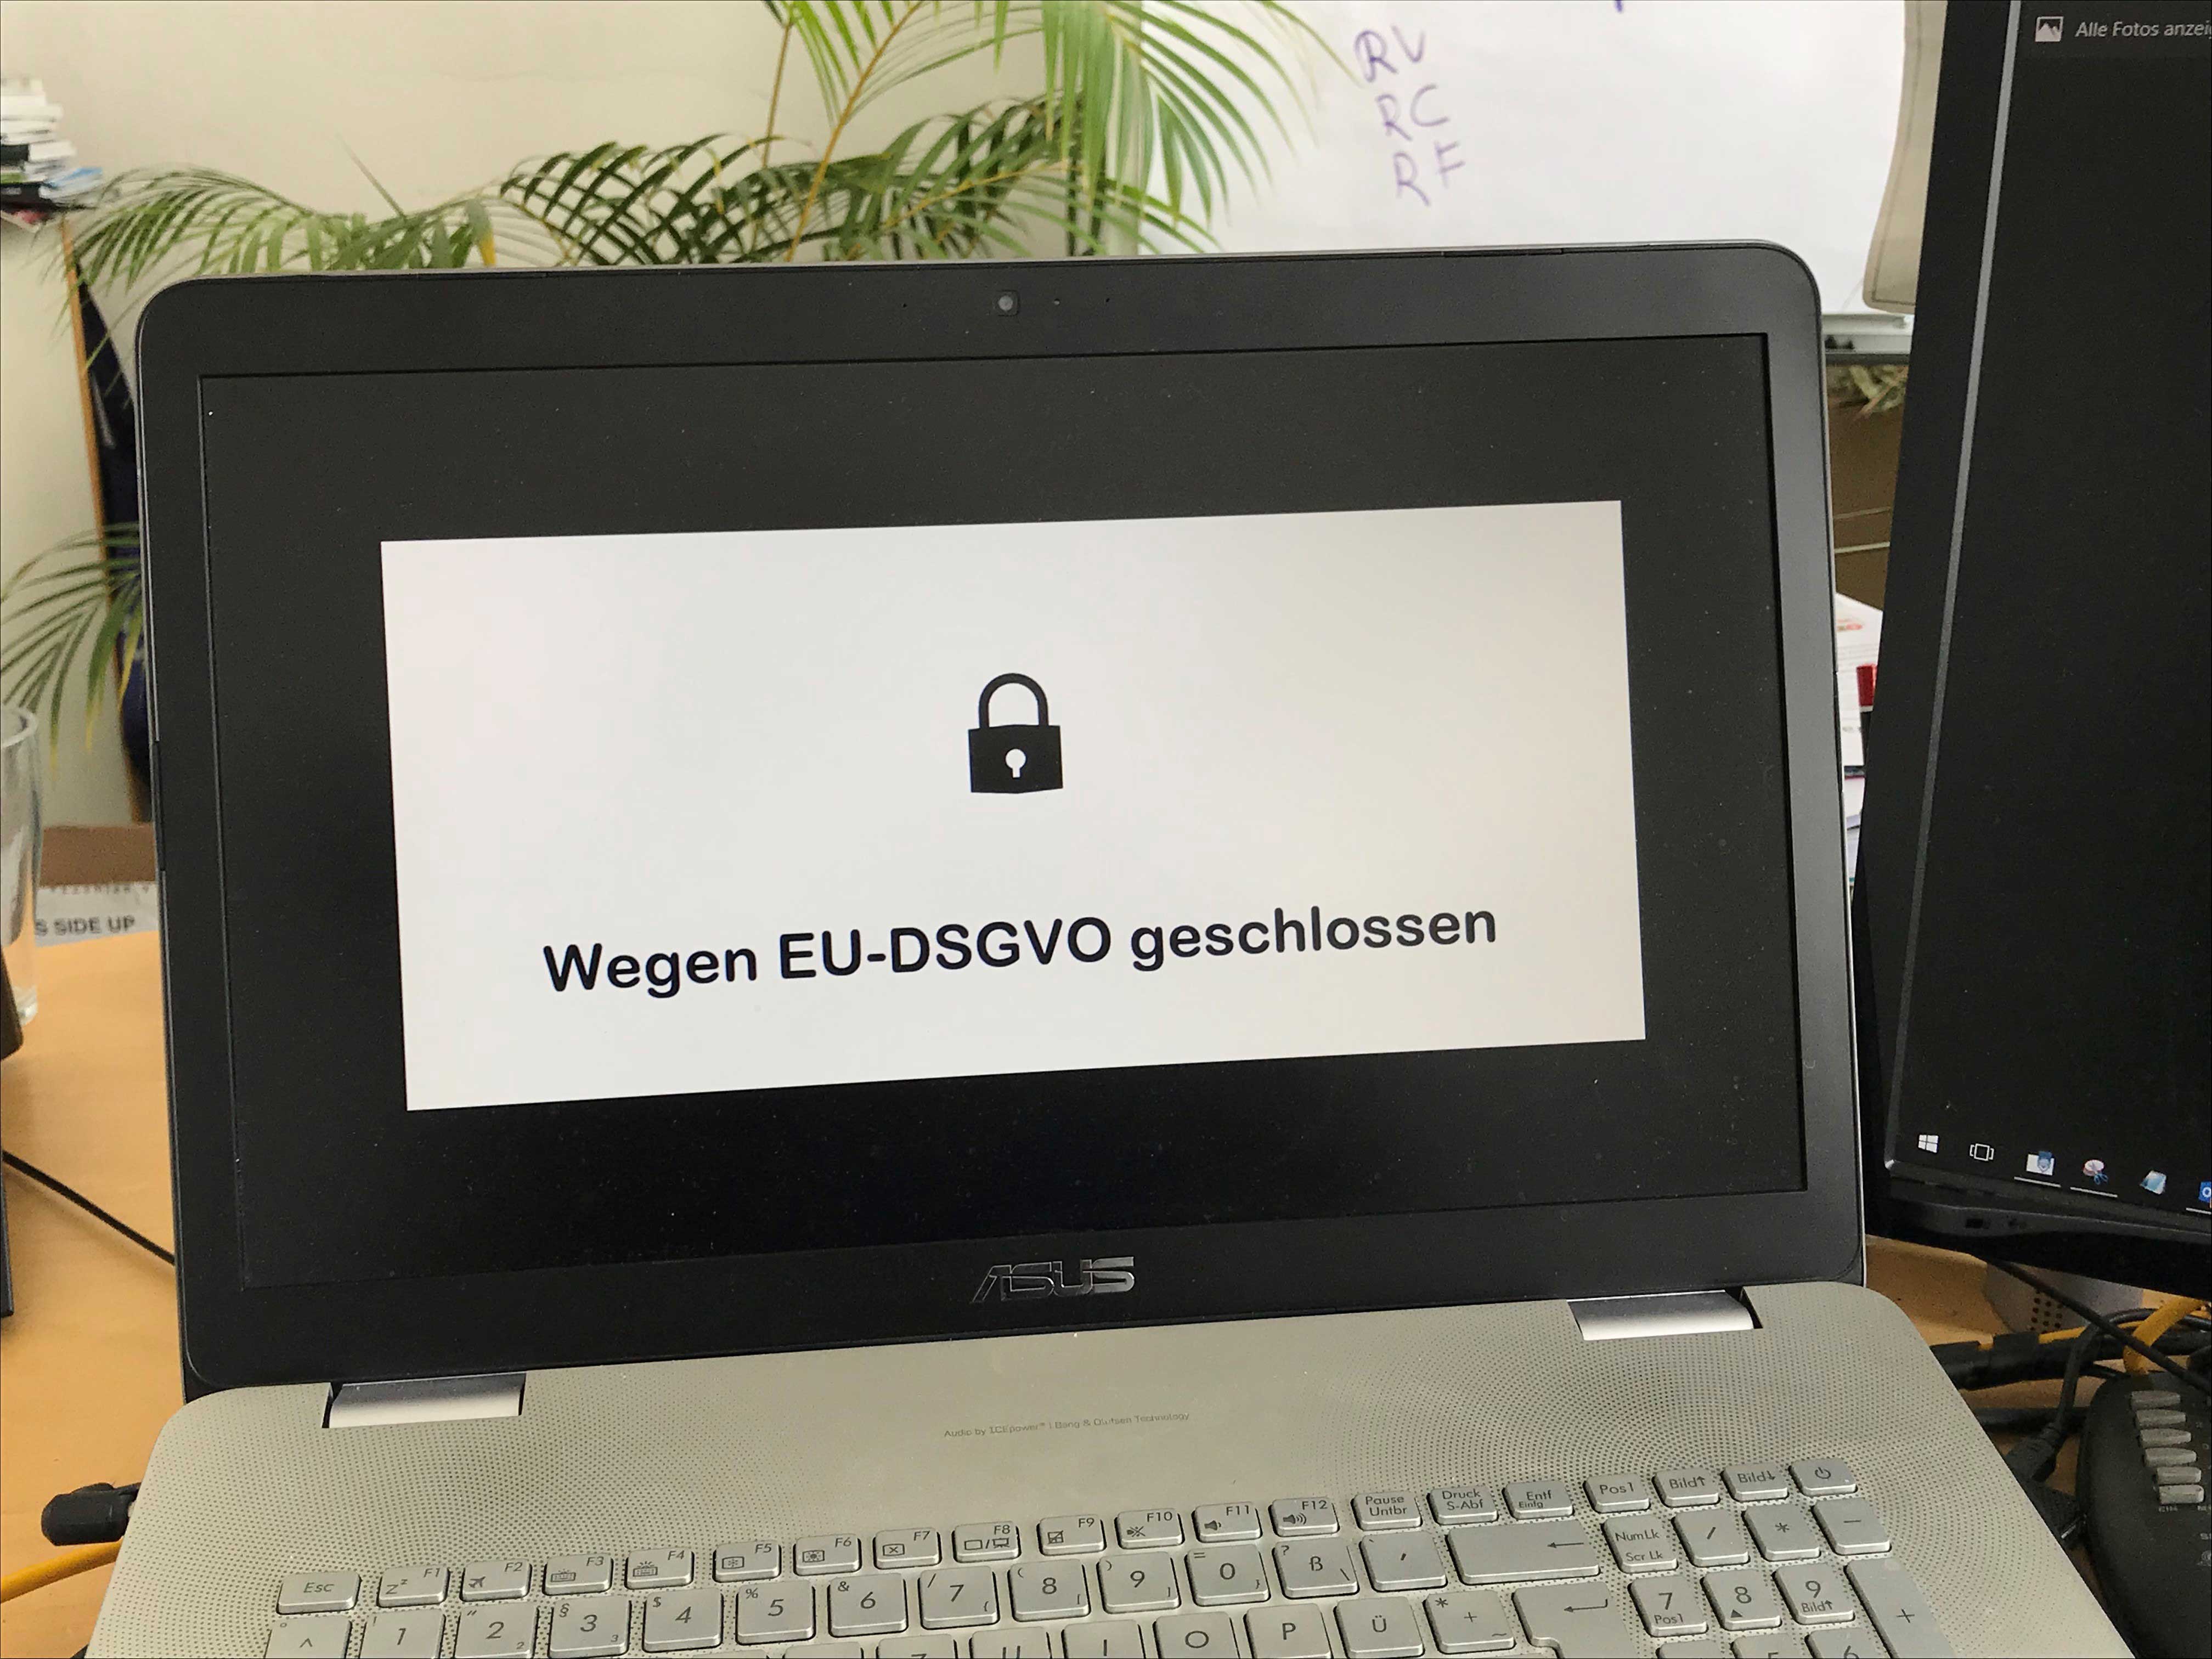 wegen DSGVO geschlossen EU-GDPR closed